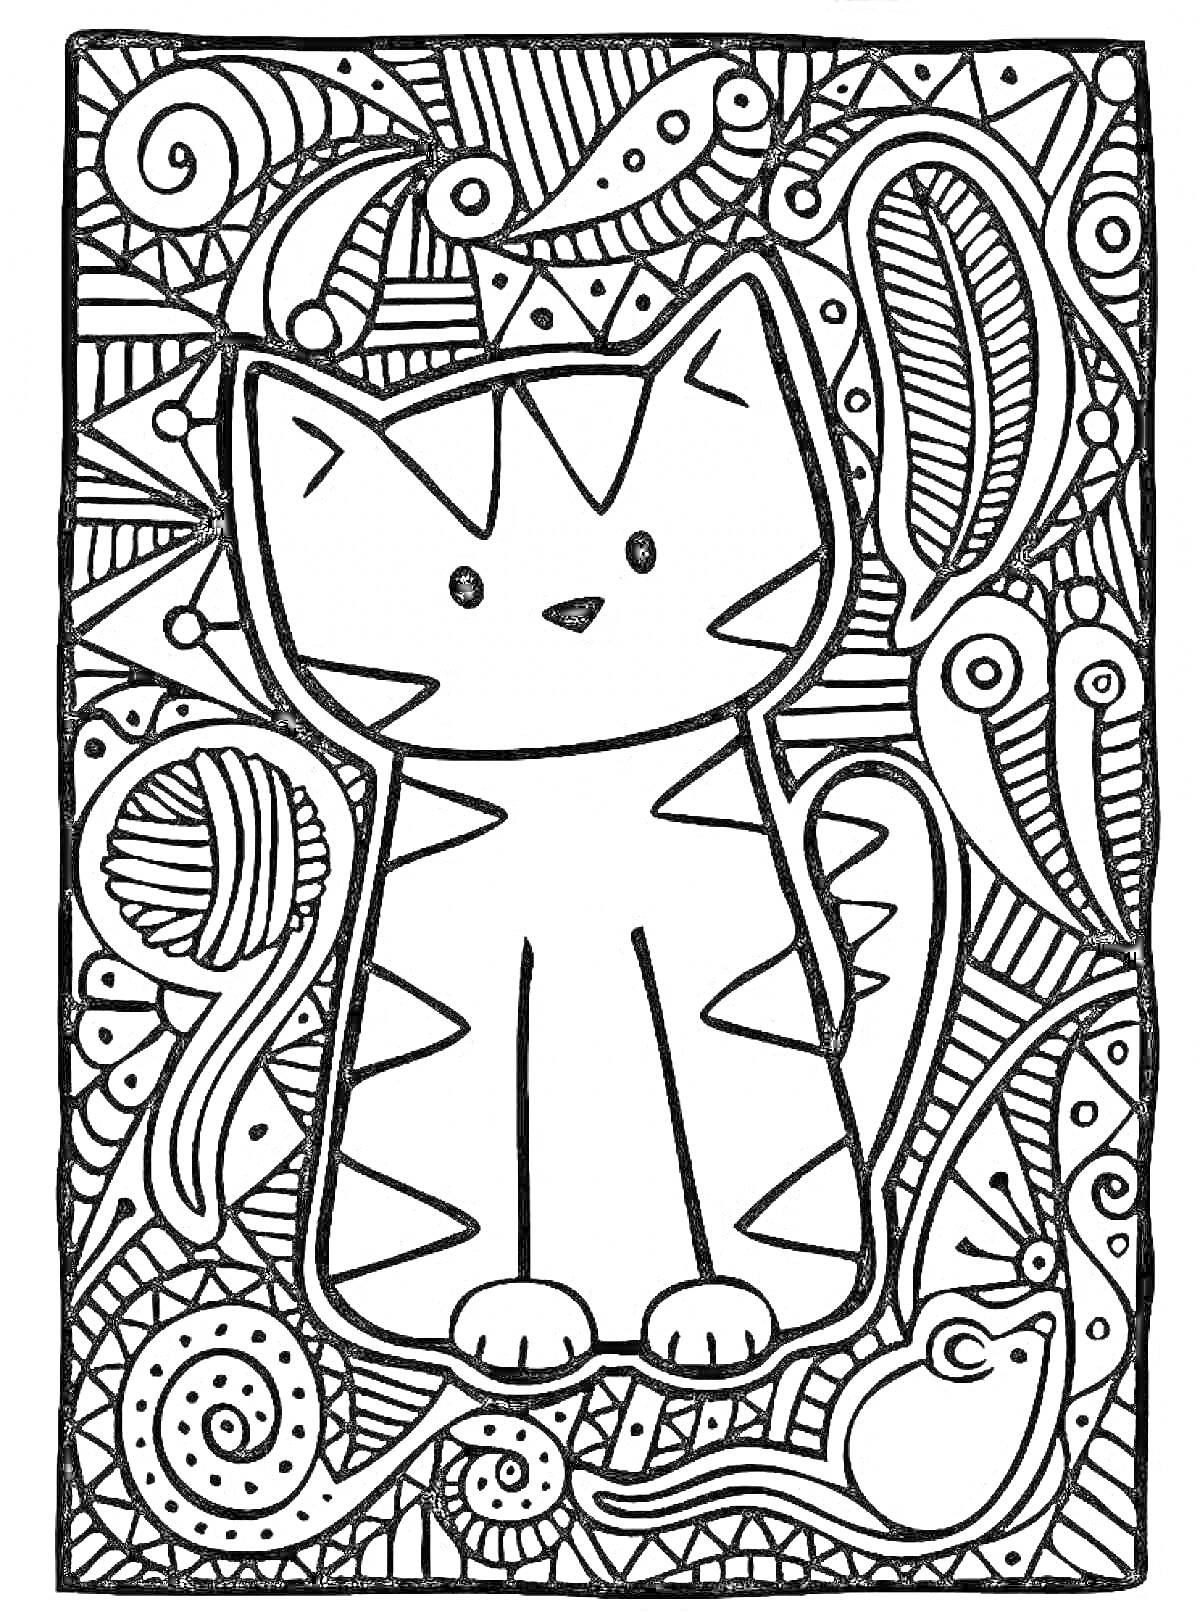 Раскраска Кот с клубком пряжи в окружении узоров и мыши